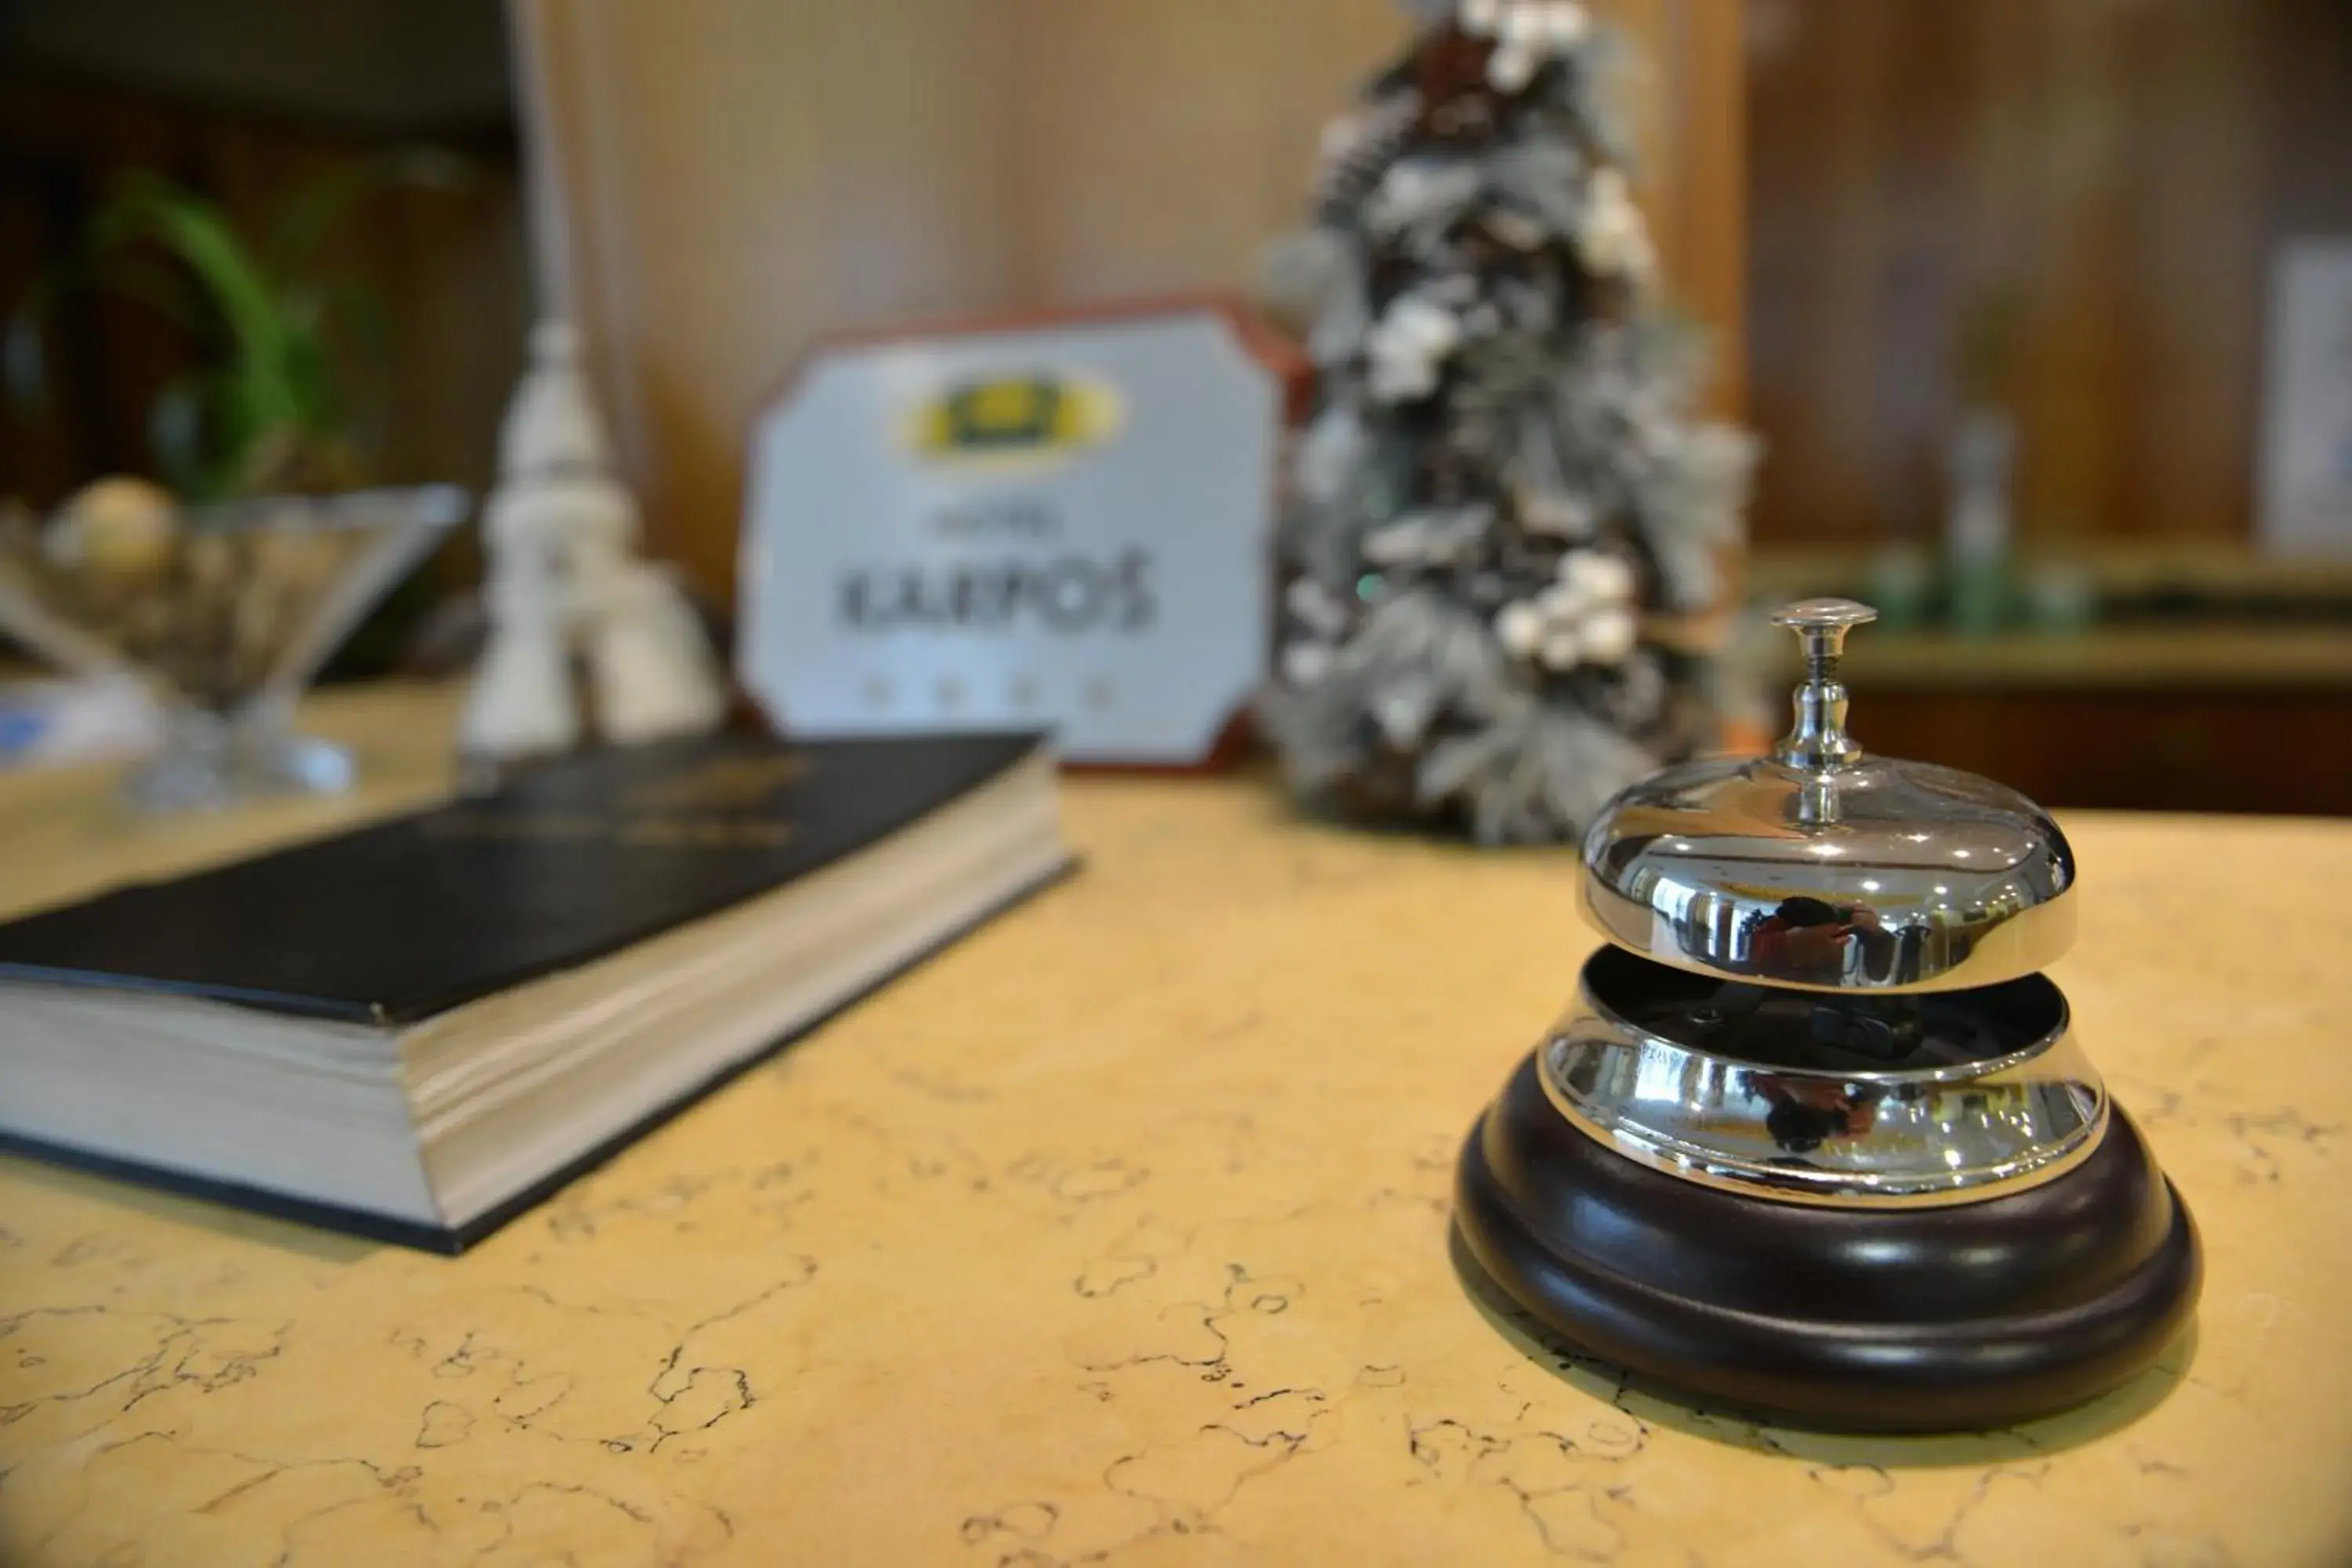 Lobby or reception in Hotel Karpos